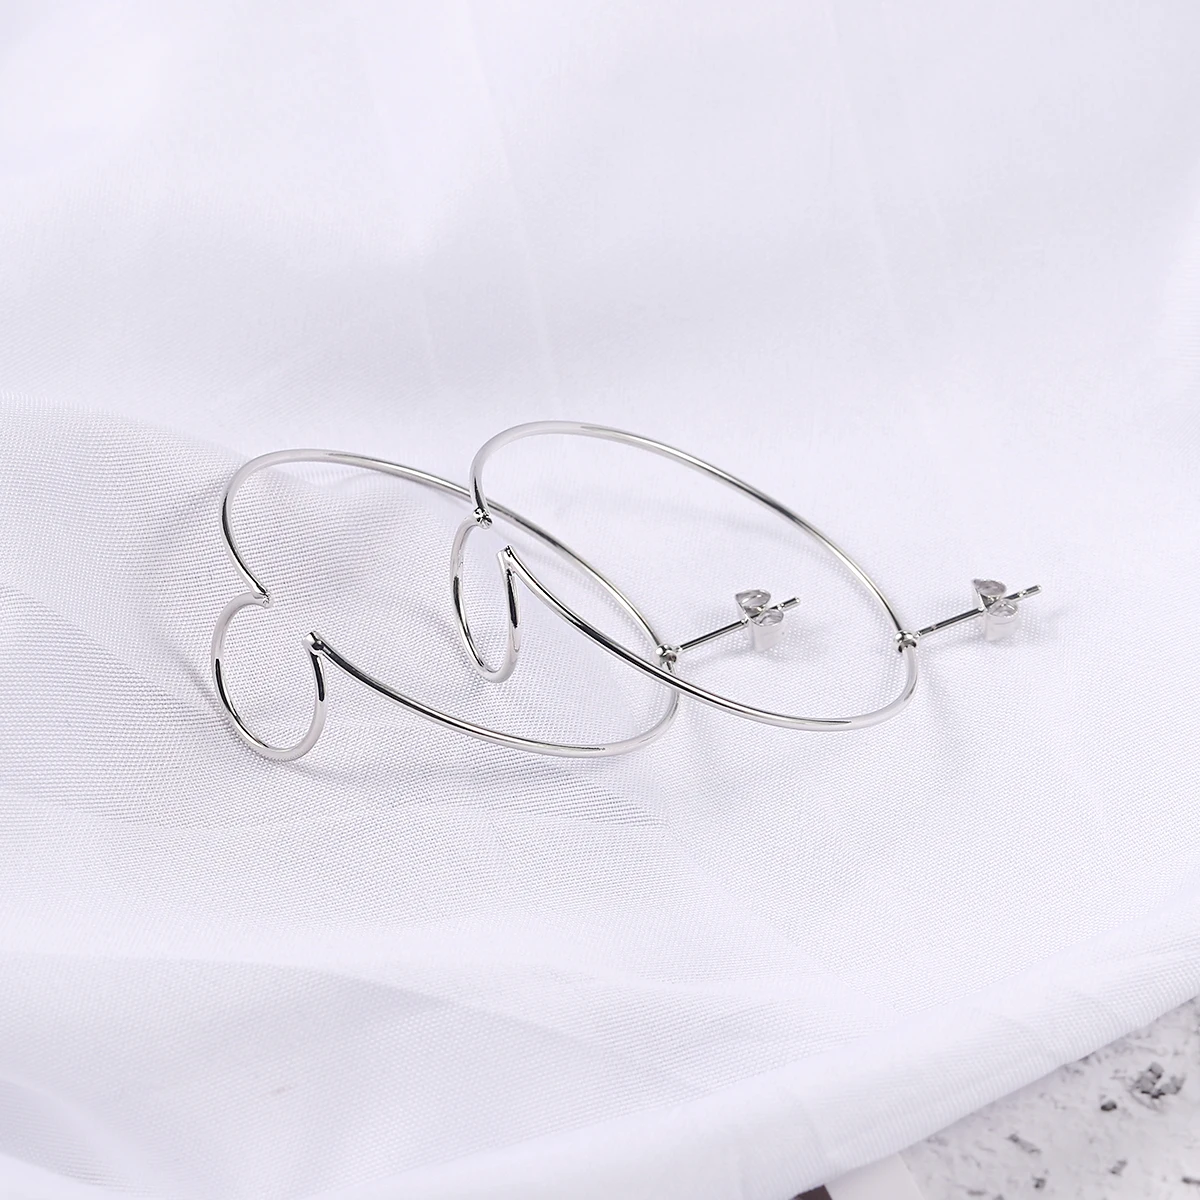 Двойные серьги в минималистическом стиле для женщин, геометрические серьги из меди, серебра, золота, дизайн, модные вечерние украшения DZE016